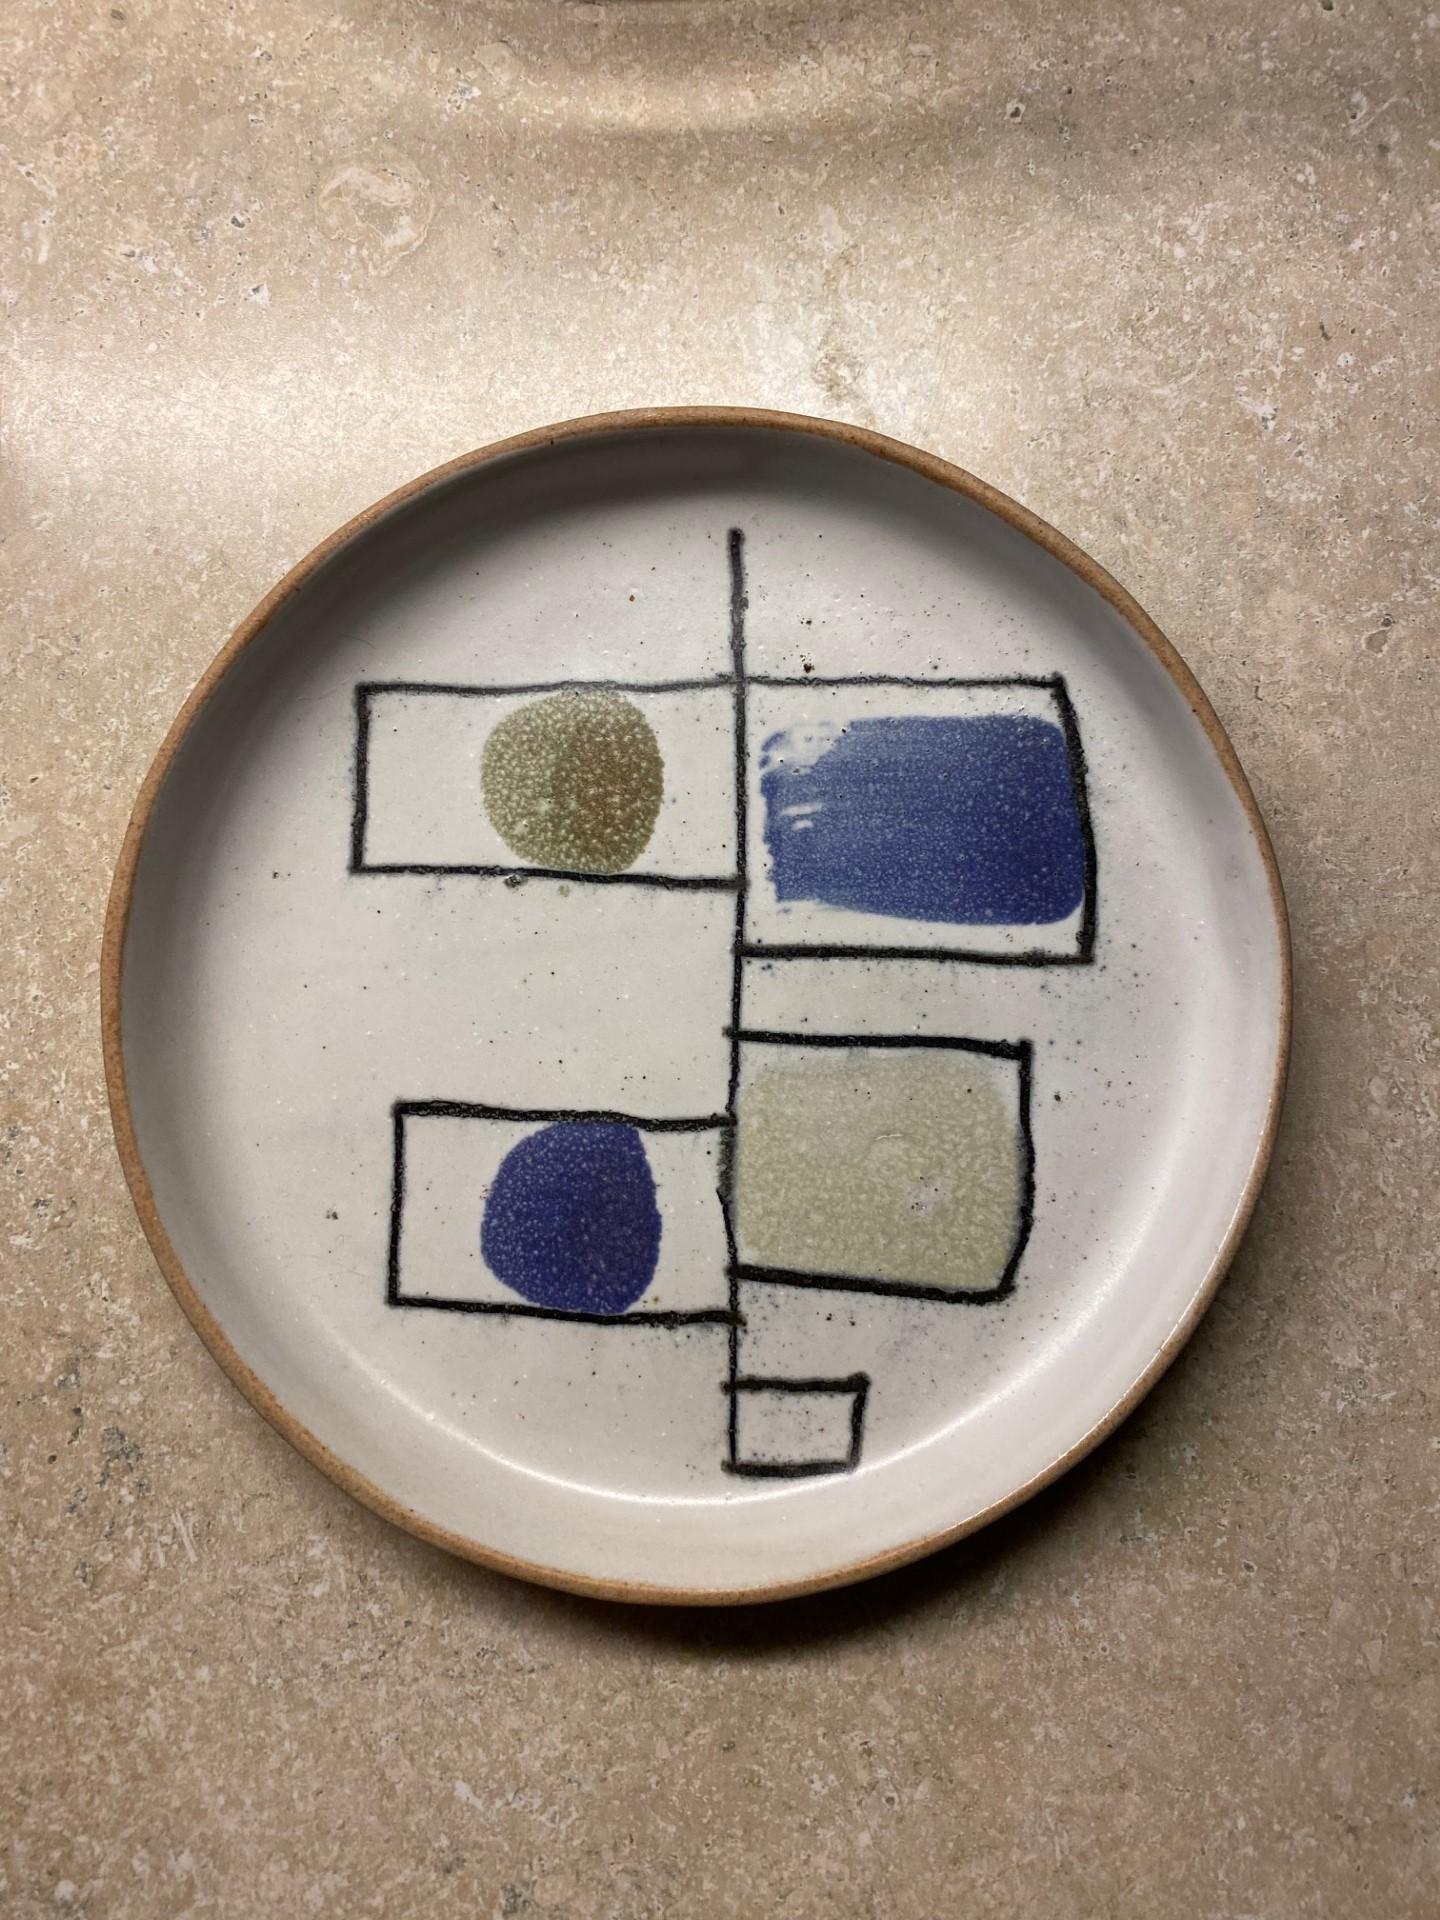 Schönes und einzigartiges Keramikstück, das an die abstrakten Themen der 1960er Jahre erinnert.  Dieses seltene Werk von David Gil (1922-2002) ist zugleich minimalistisch und aktuell.  Das abstrakte Design erweist sich als aktuell und besonders. 